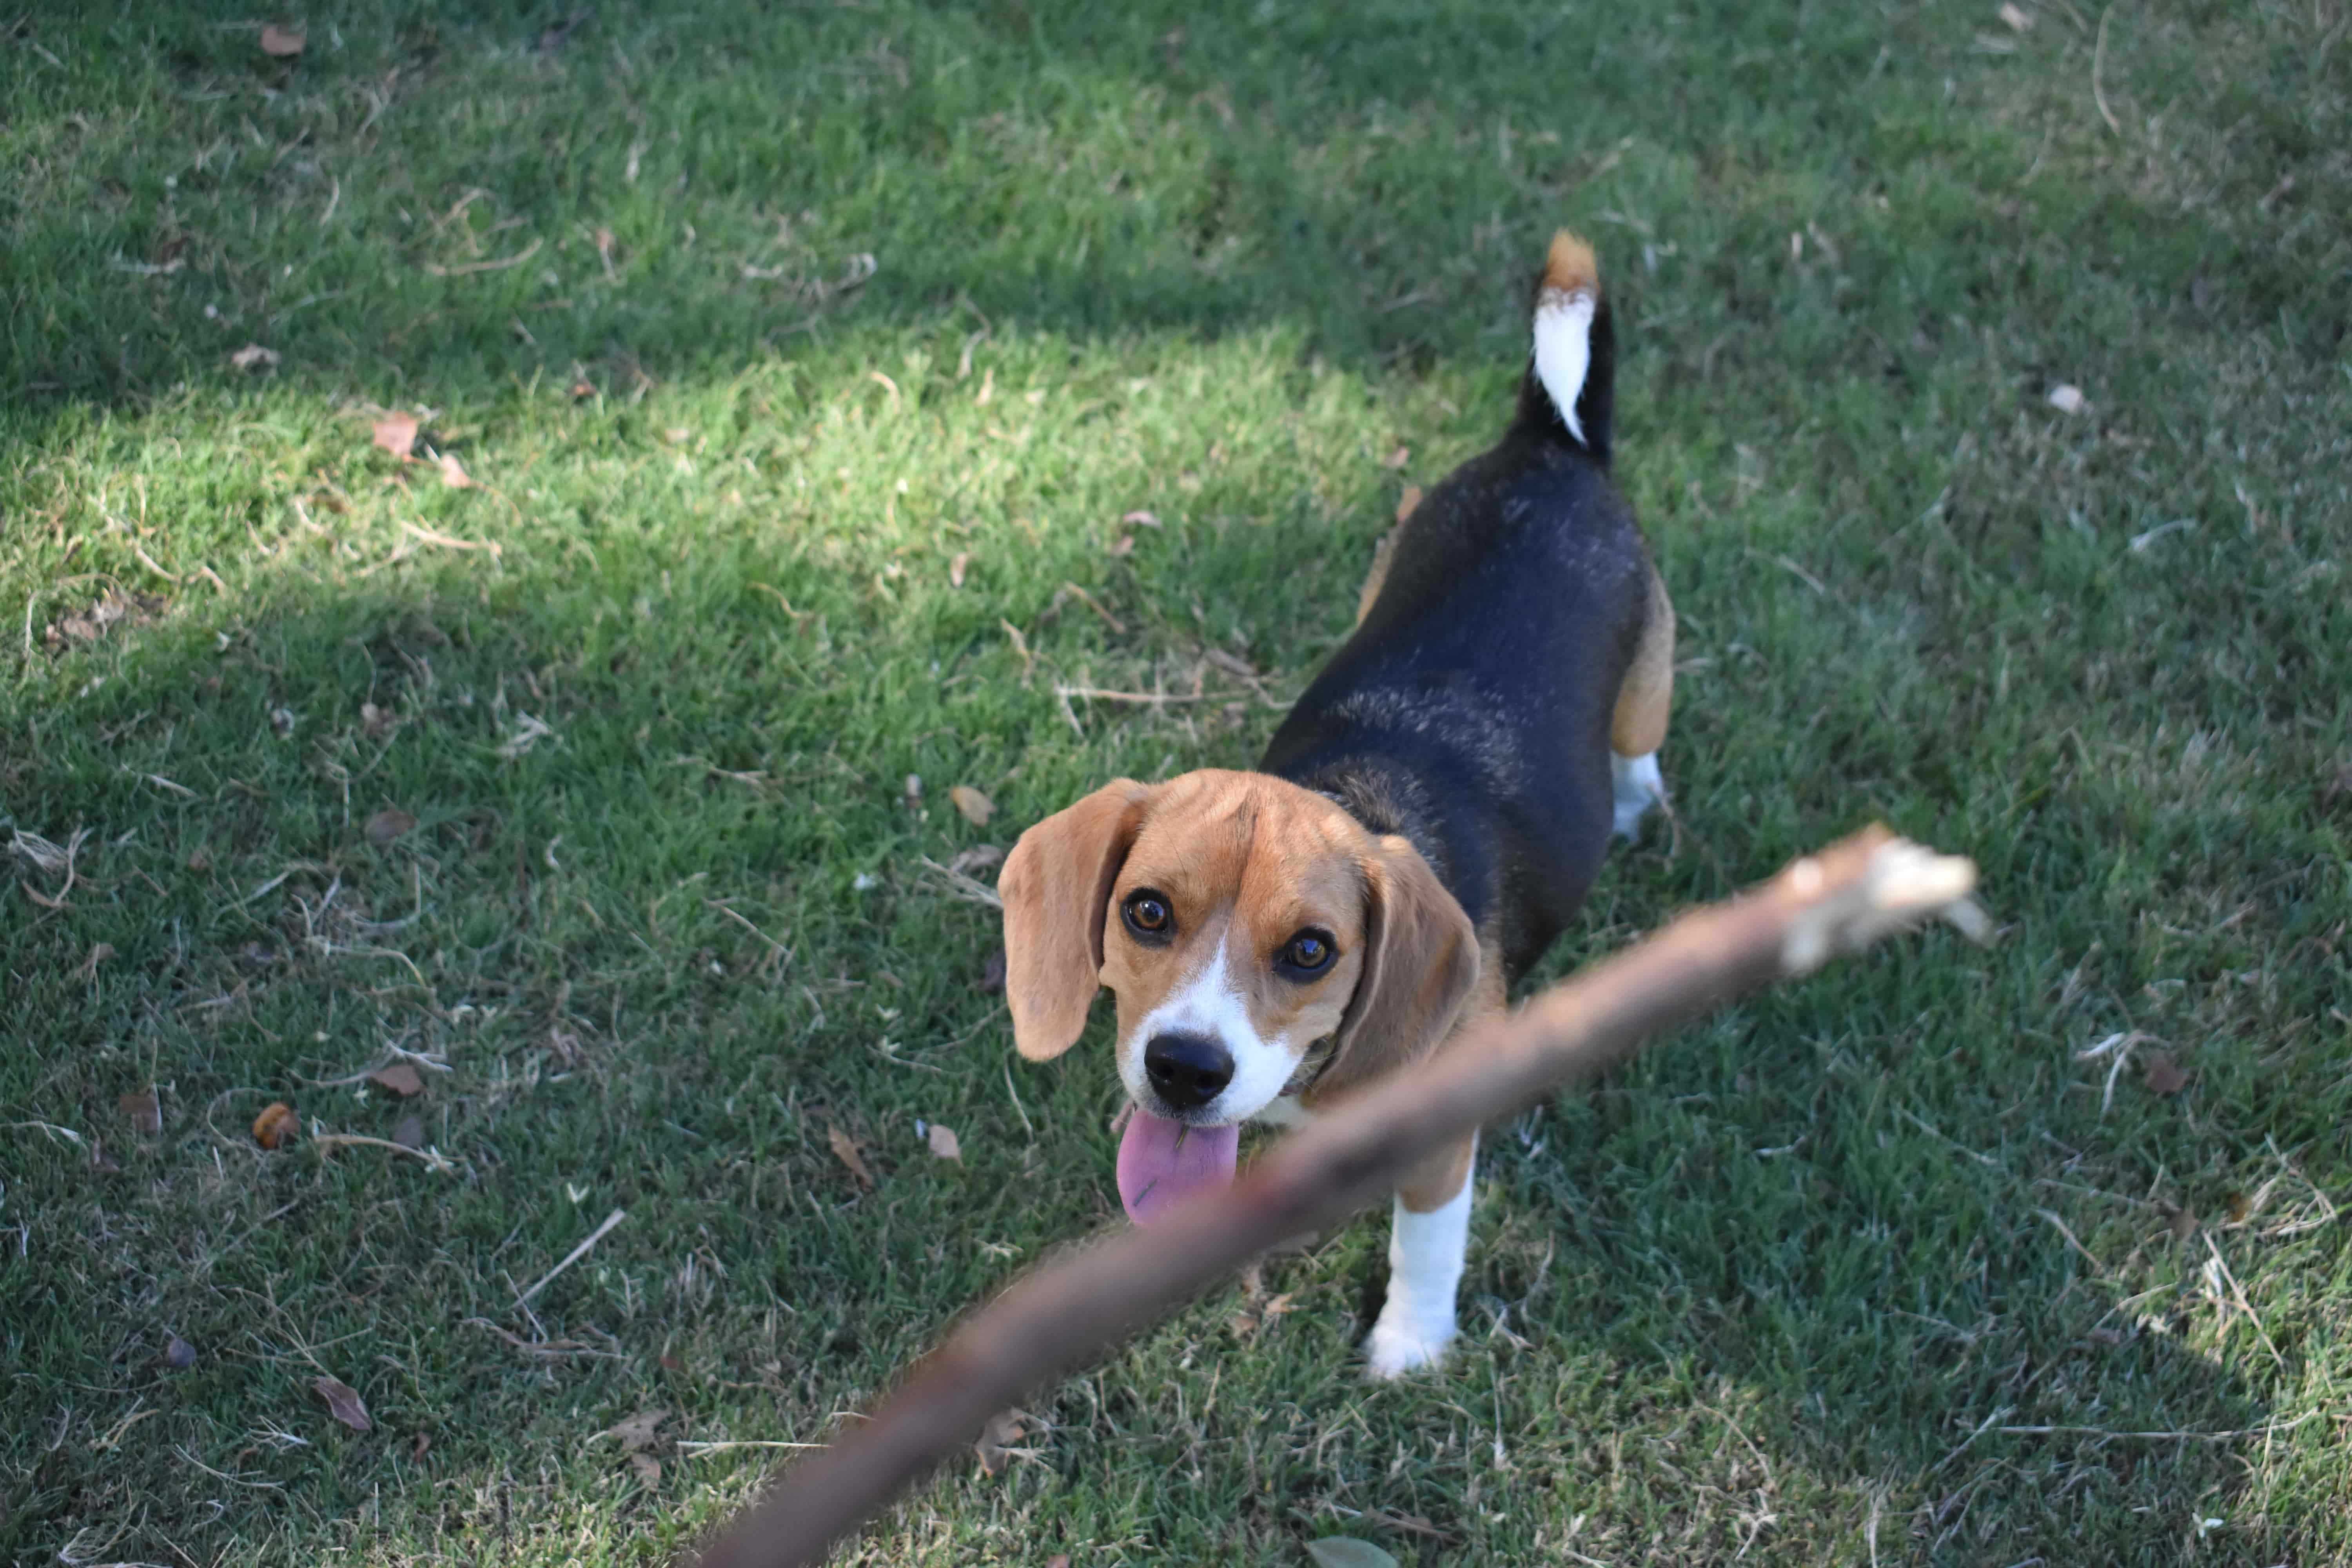 Dog chasing a stick